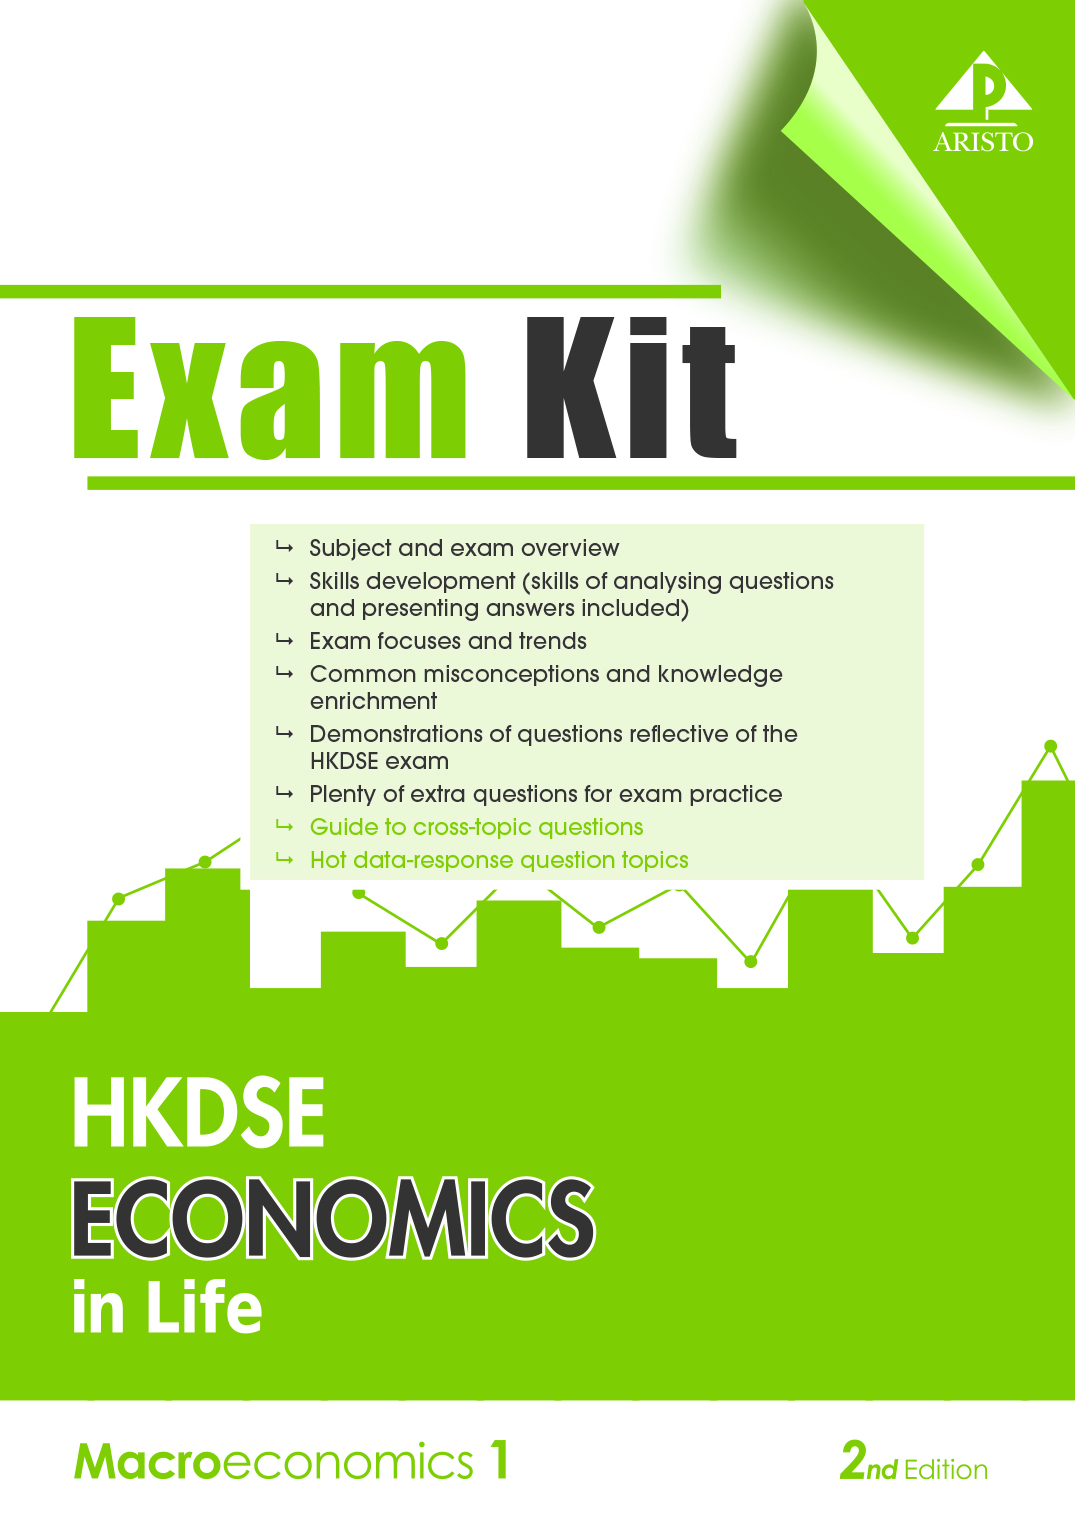 HKDSE Economics in Life(Second Edition) Macroeconomics 1(Exam Kit)